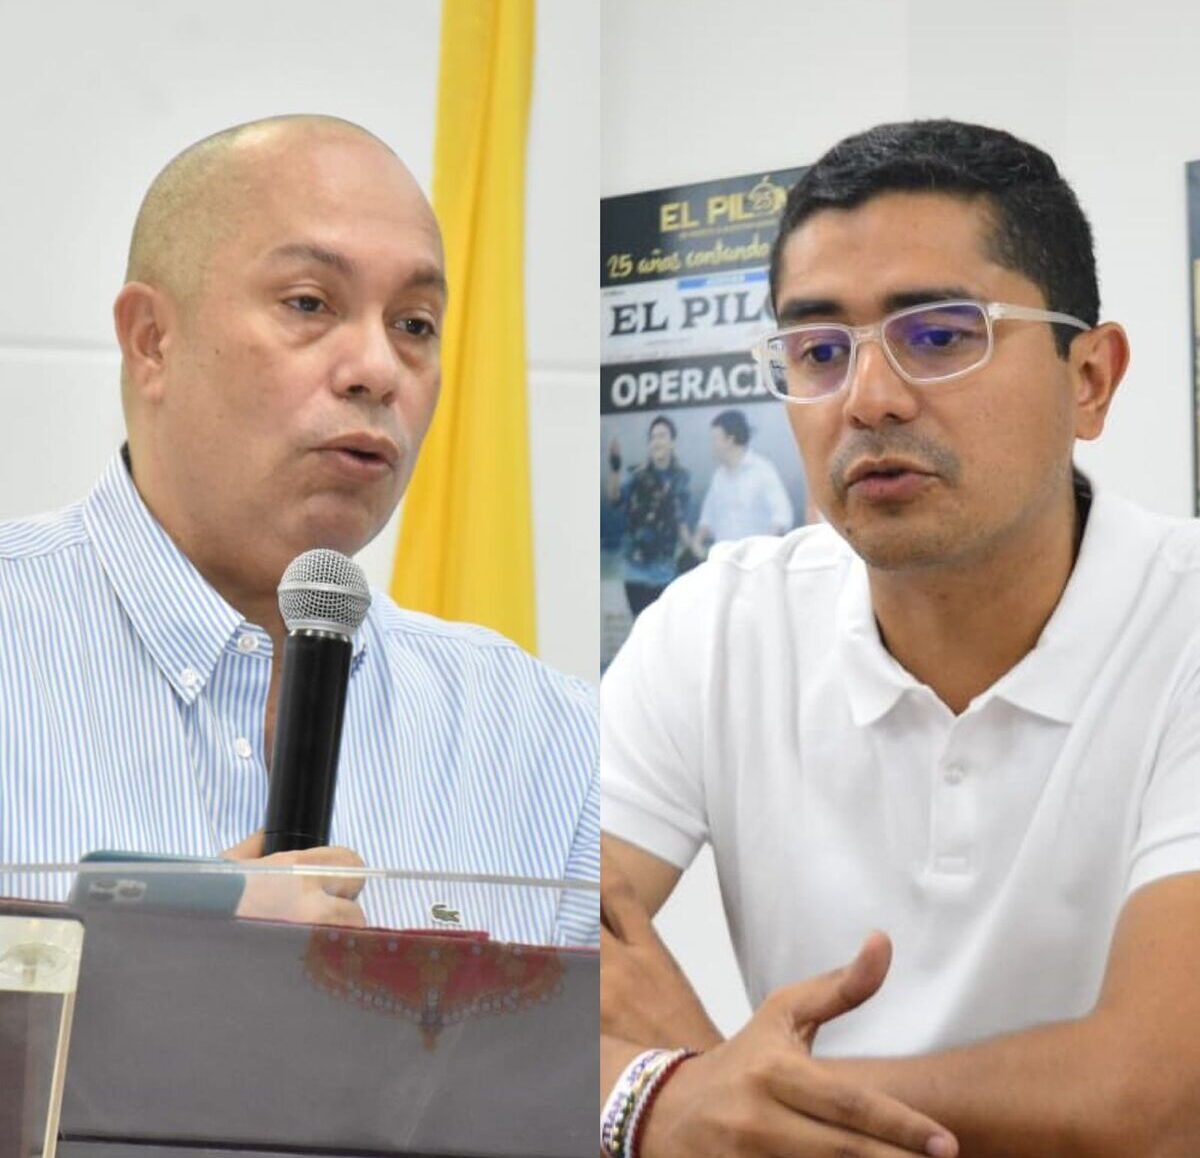 Alcalde de Valledupar, Ernesto Orozco, y el concejal Cristian José Moreno.